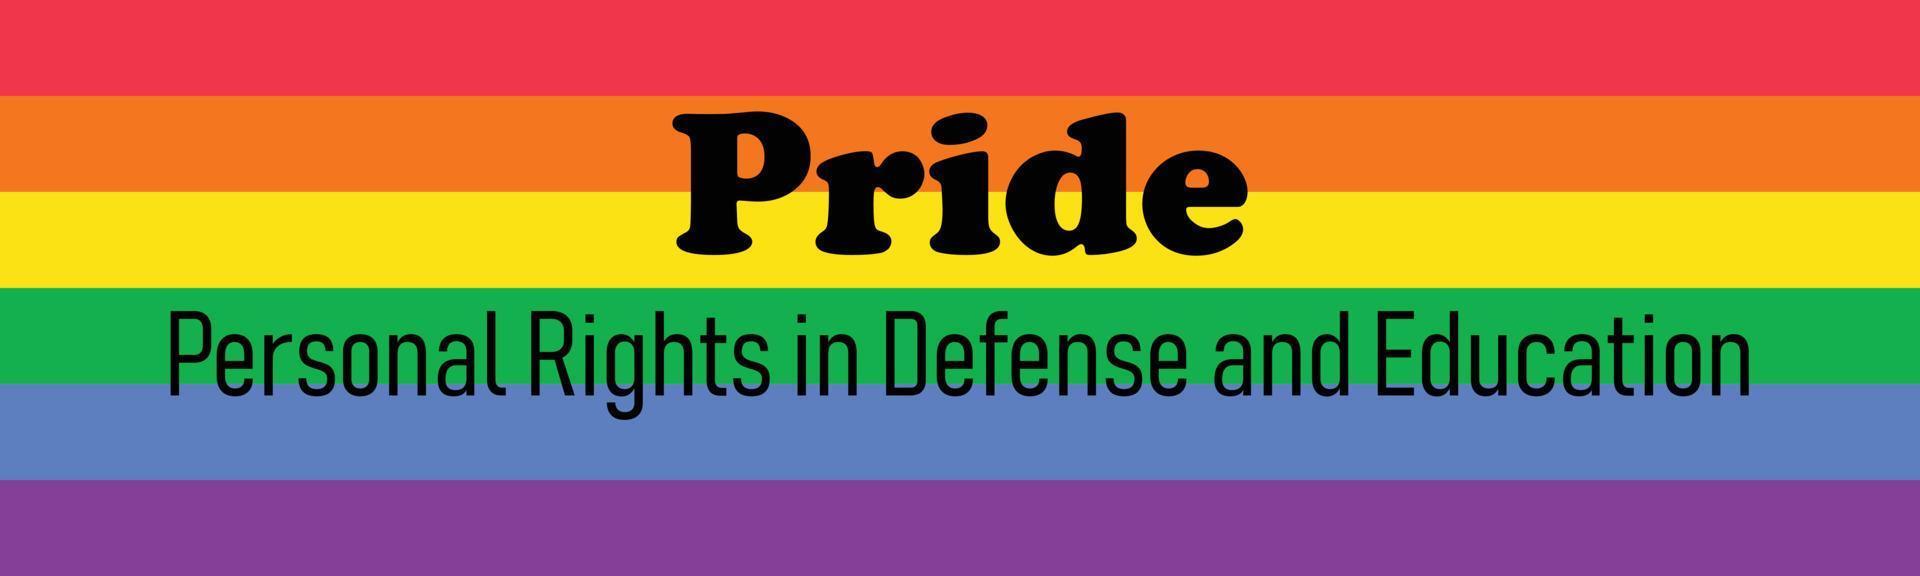 acronyme de fierté - droits personnels dans la défense et l'éducation. organisation politique homosexuelle. drapeau arc-en-ciel coloré. illustration vectorielle vecteur